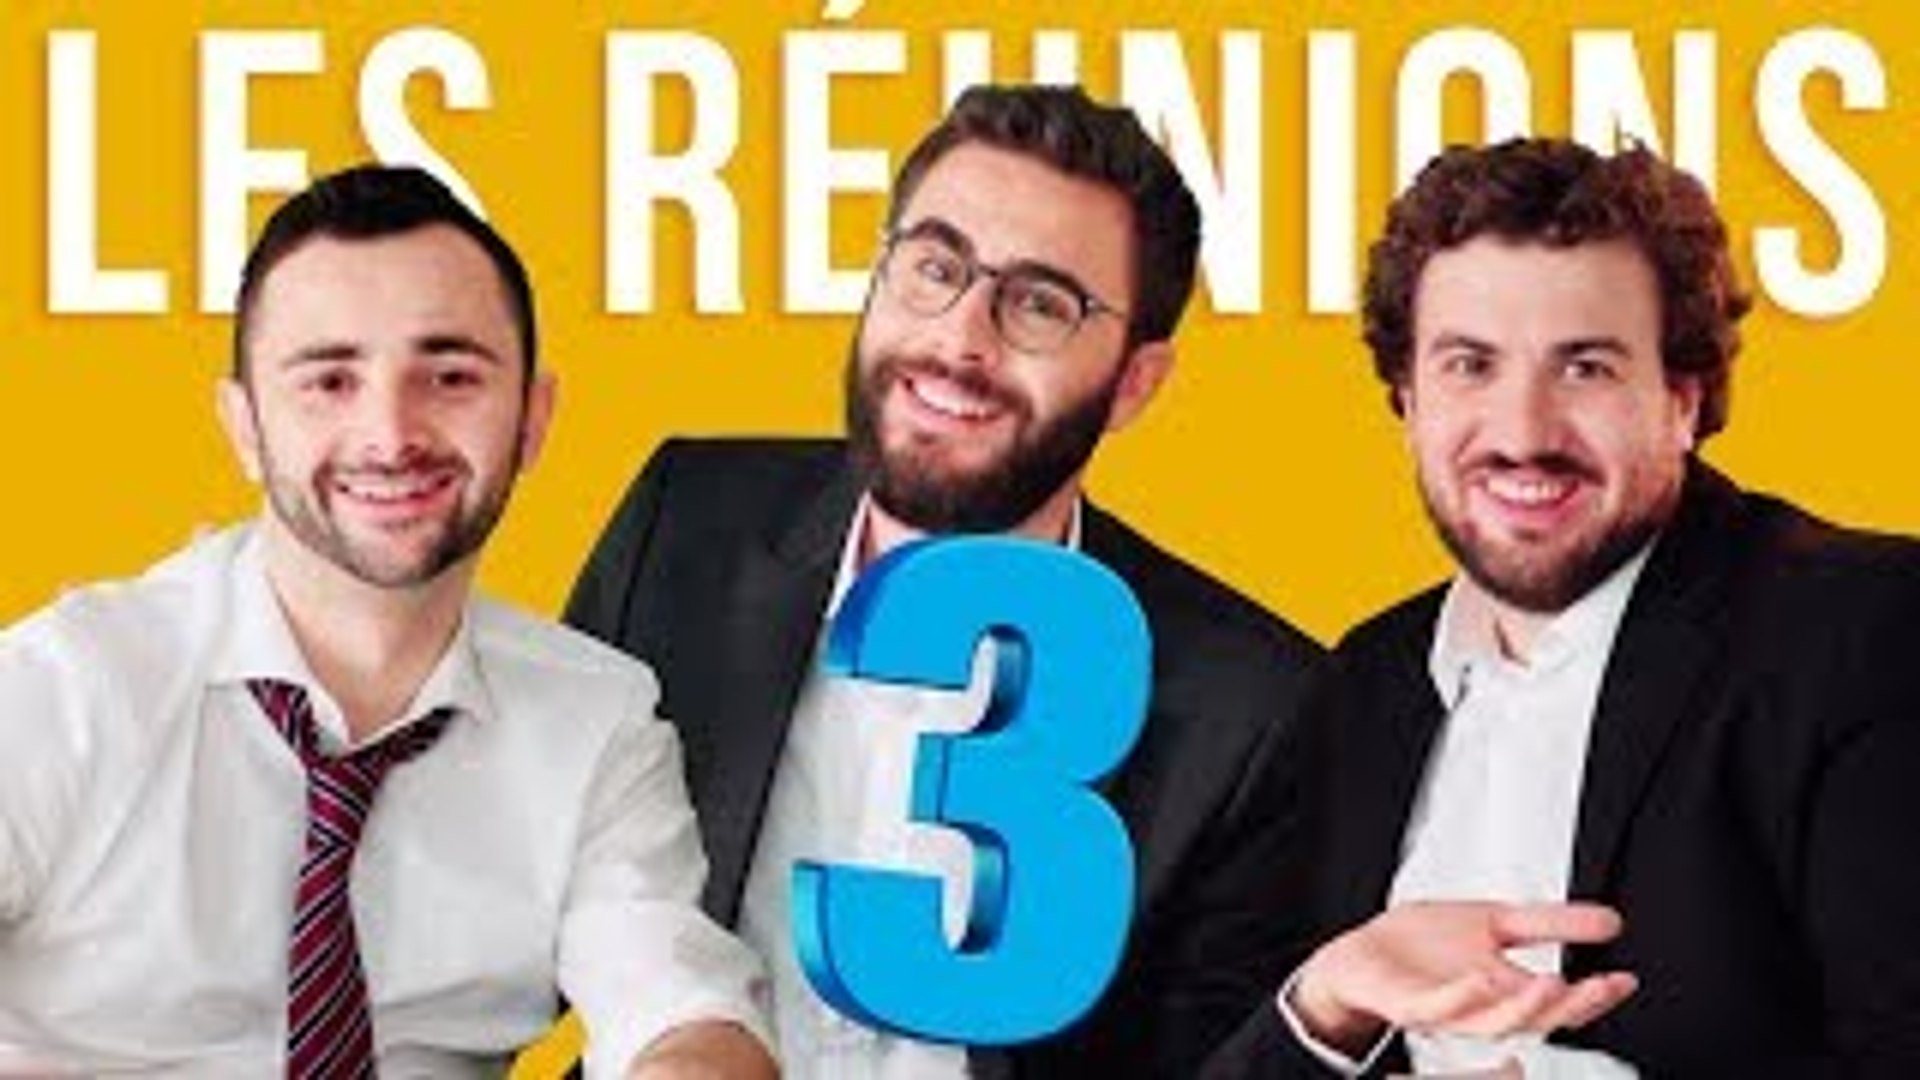 CYPRIEN-LES RÉUNIONS 3 - Vidéo Dailymotion